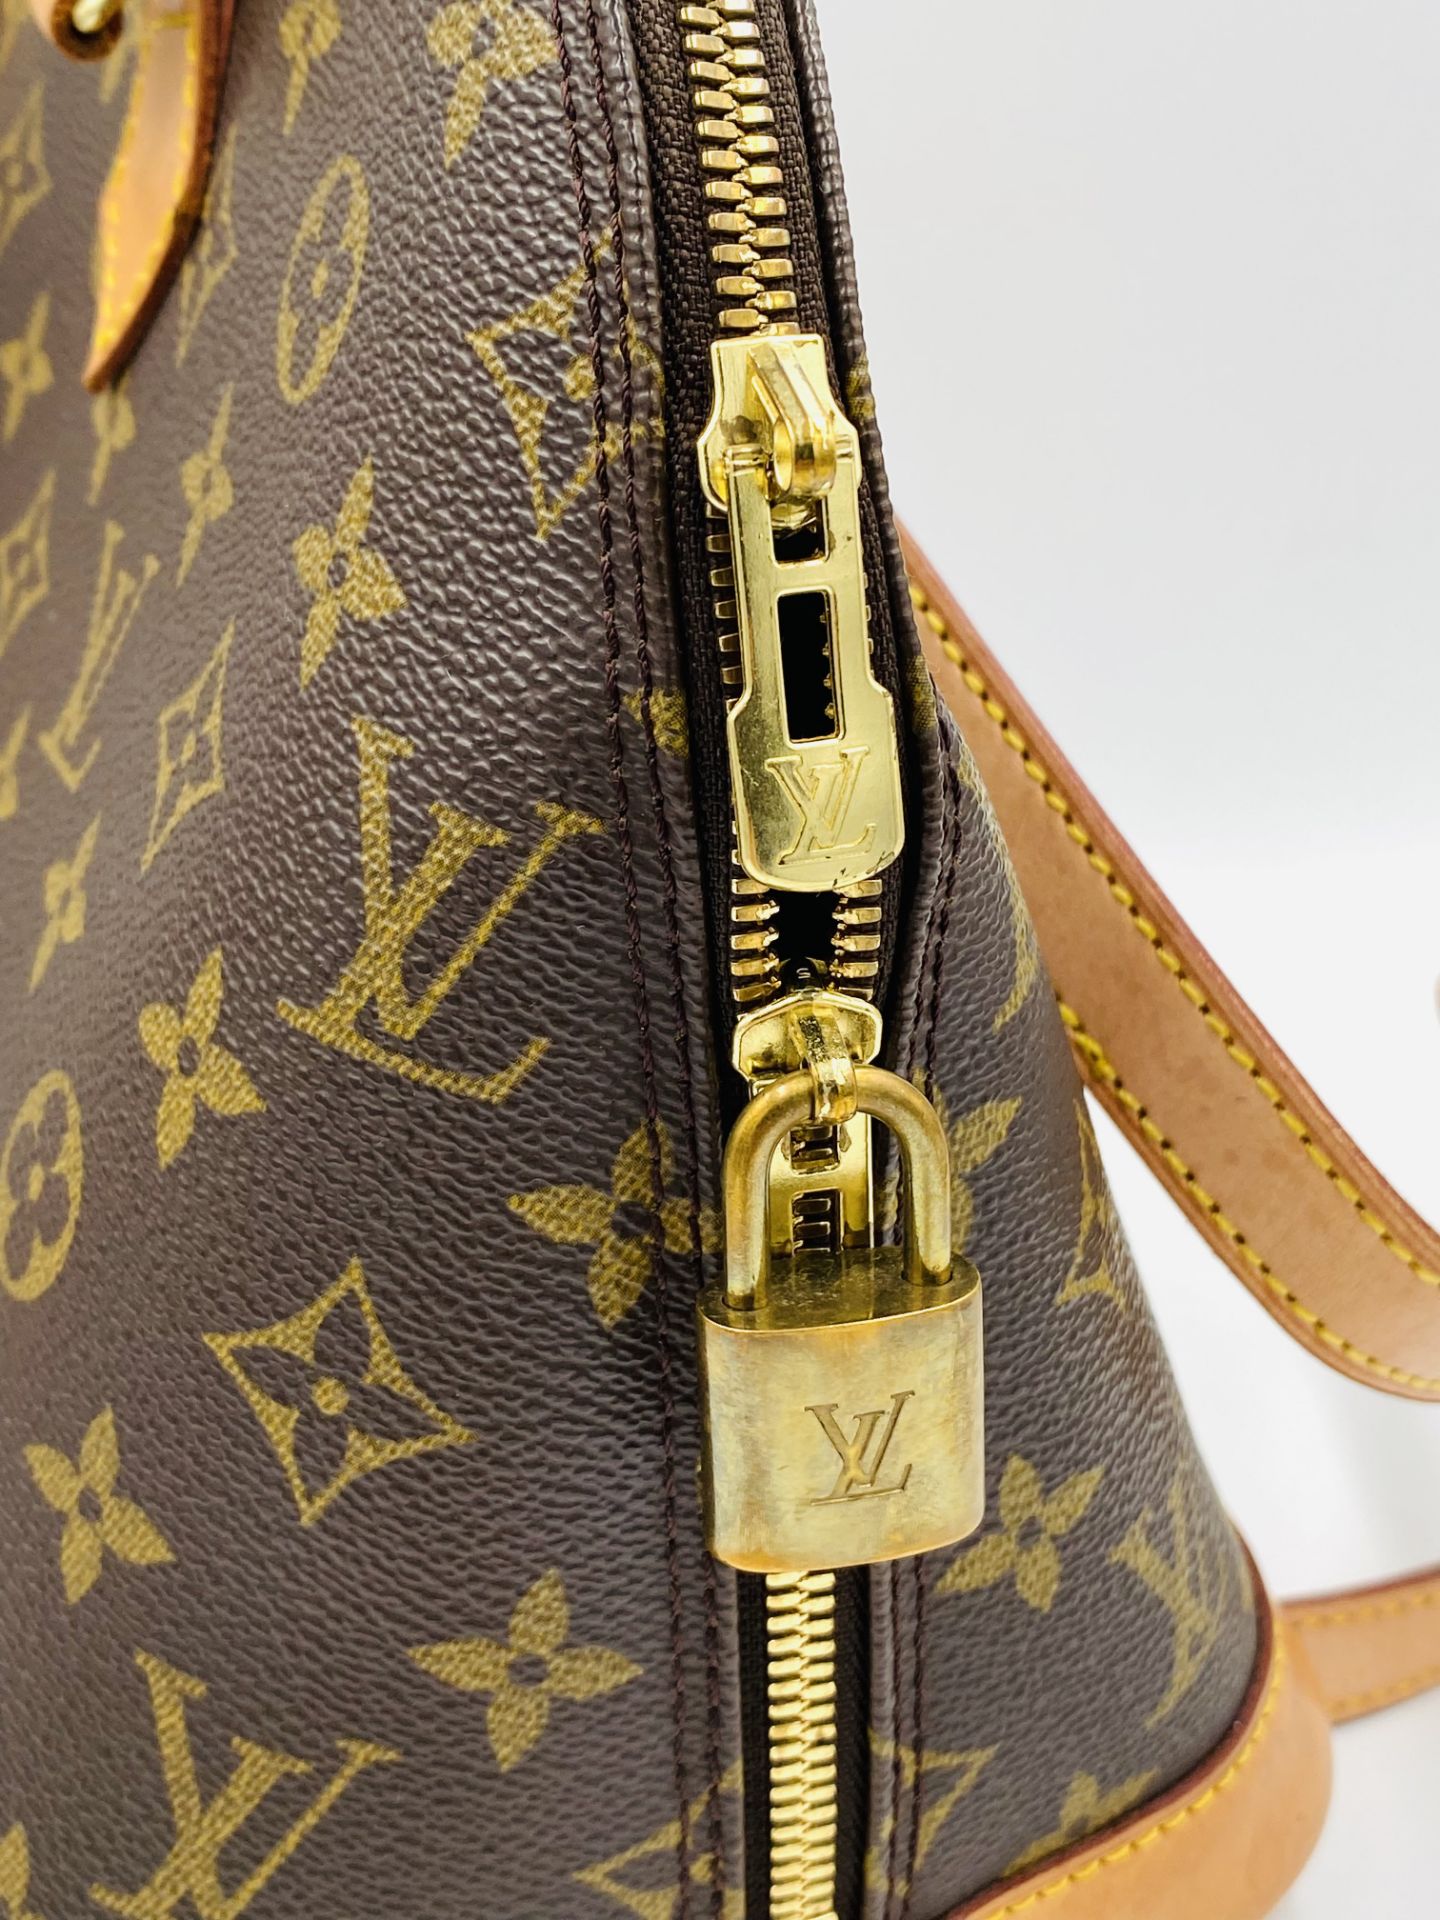 Louis Vuitton Alma handbag in monogram canvas - Image 3 of 7